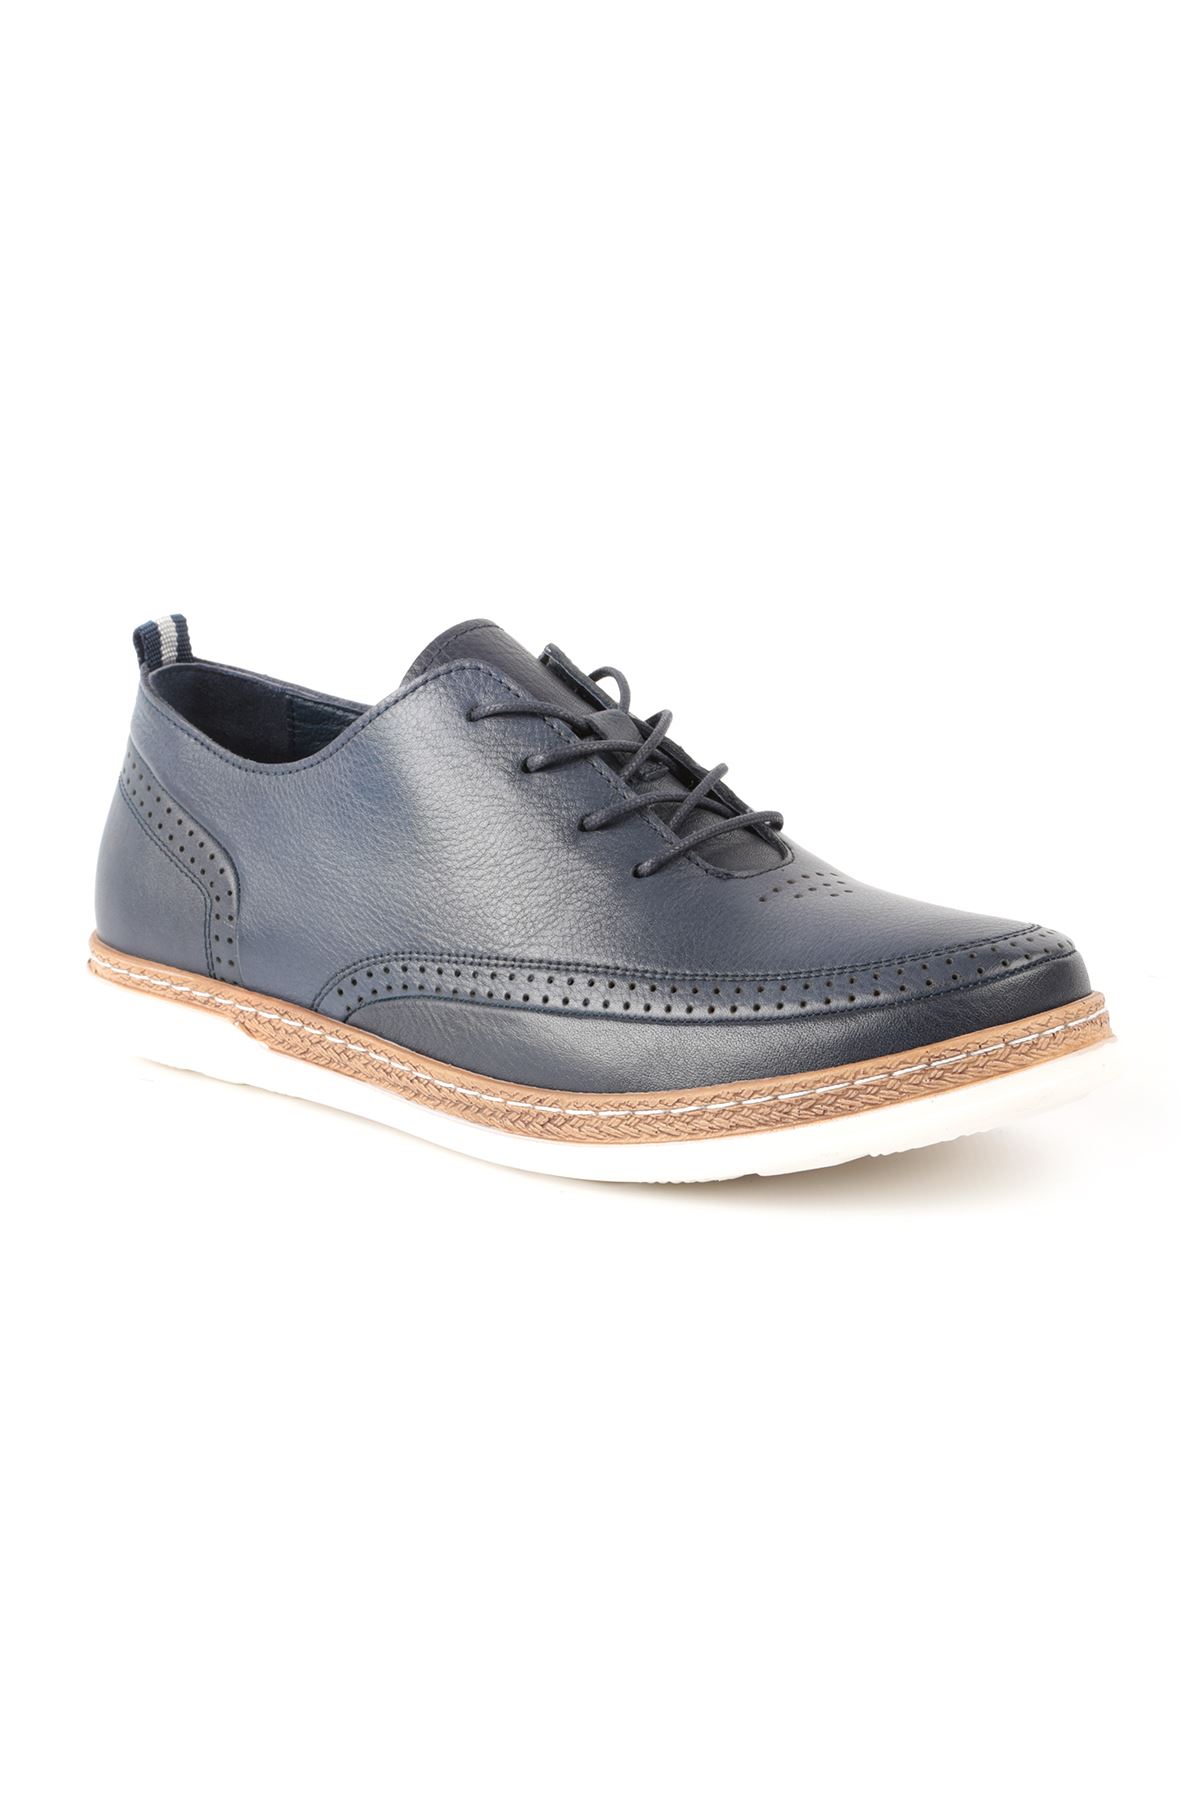 Libero L3633 Navy Blue Men Casual Shoes